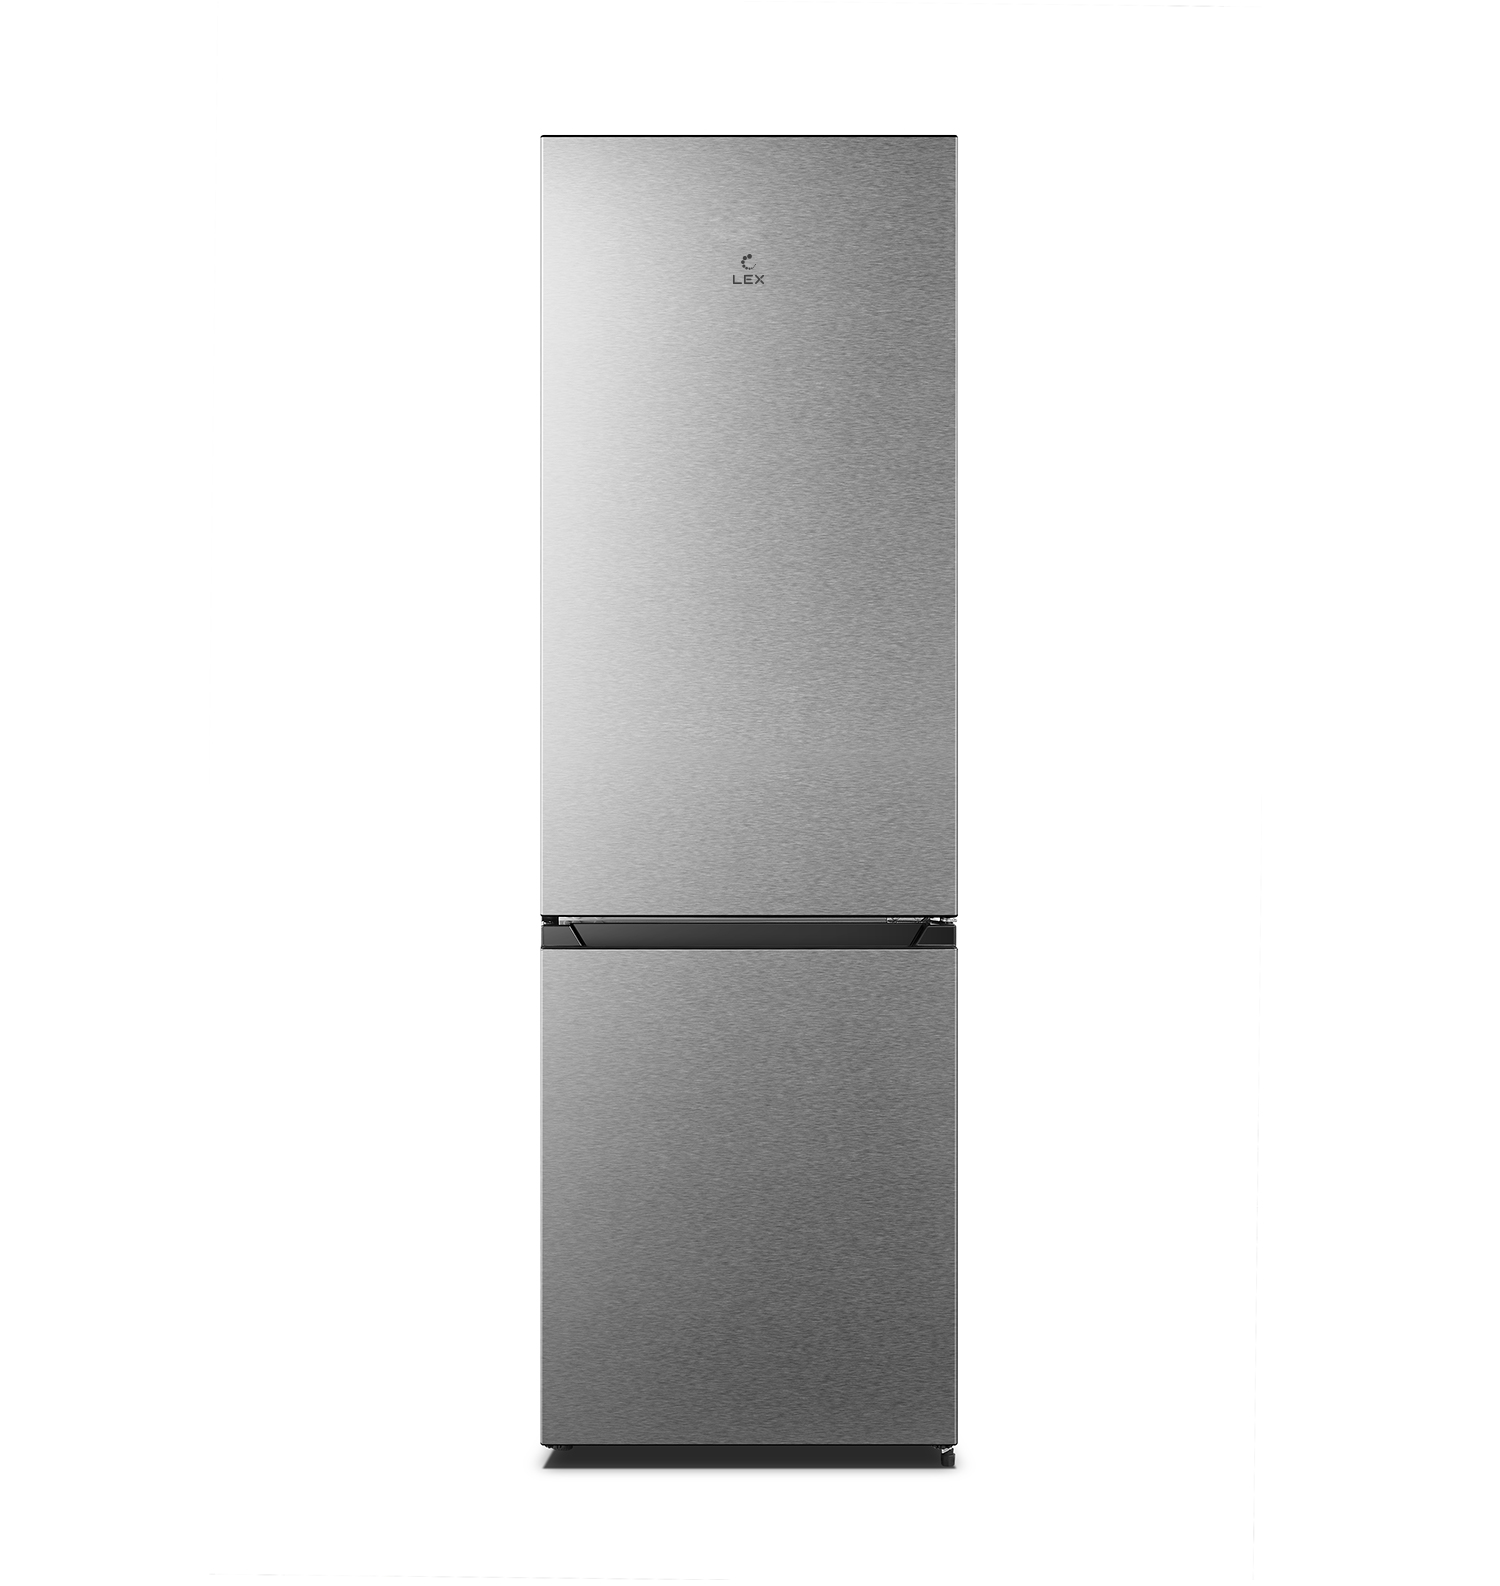 Отдельностоящий двухкамерный холодильник RFS 205 DF IX